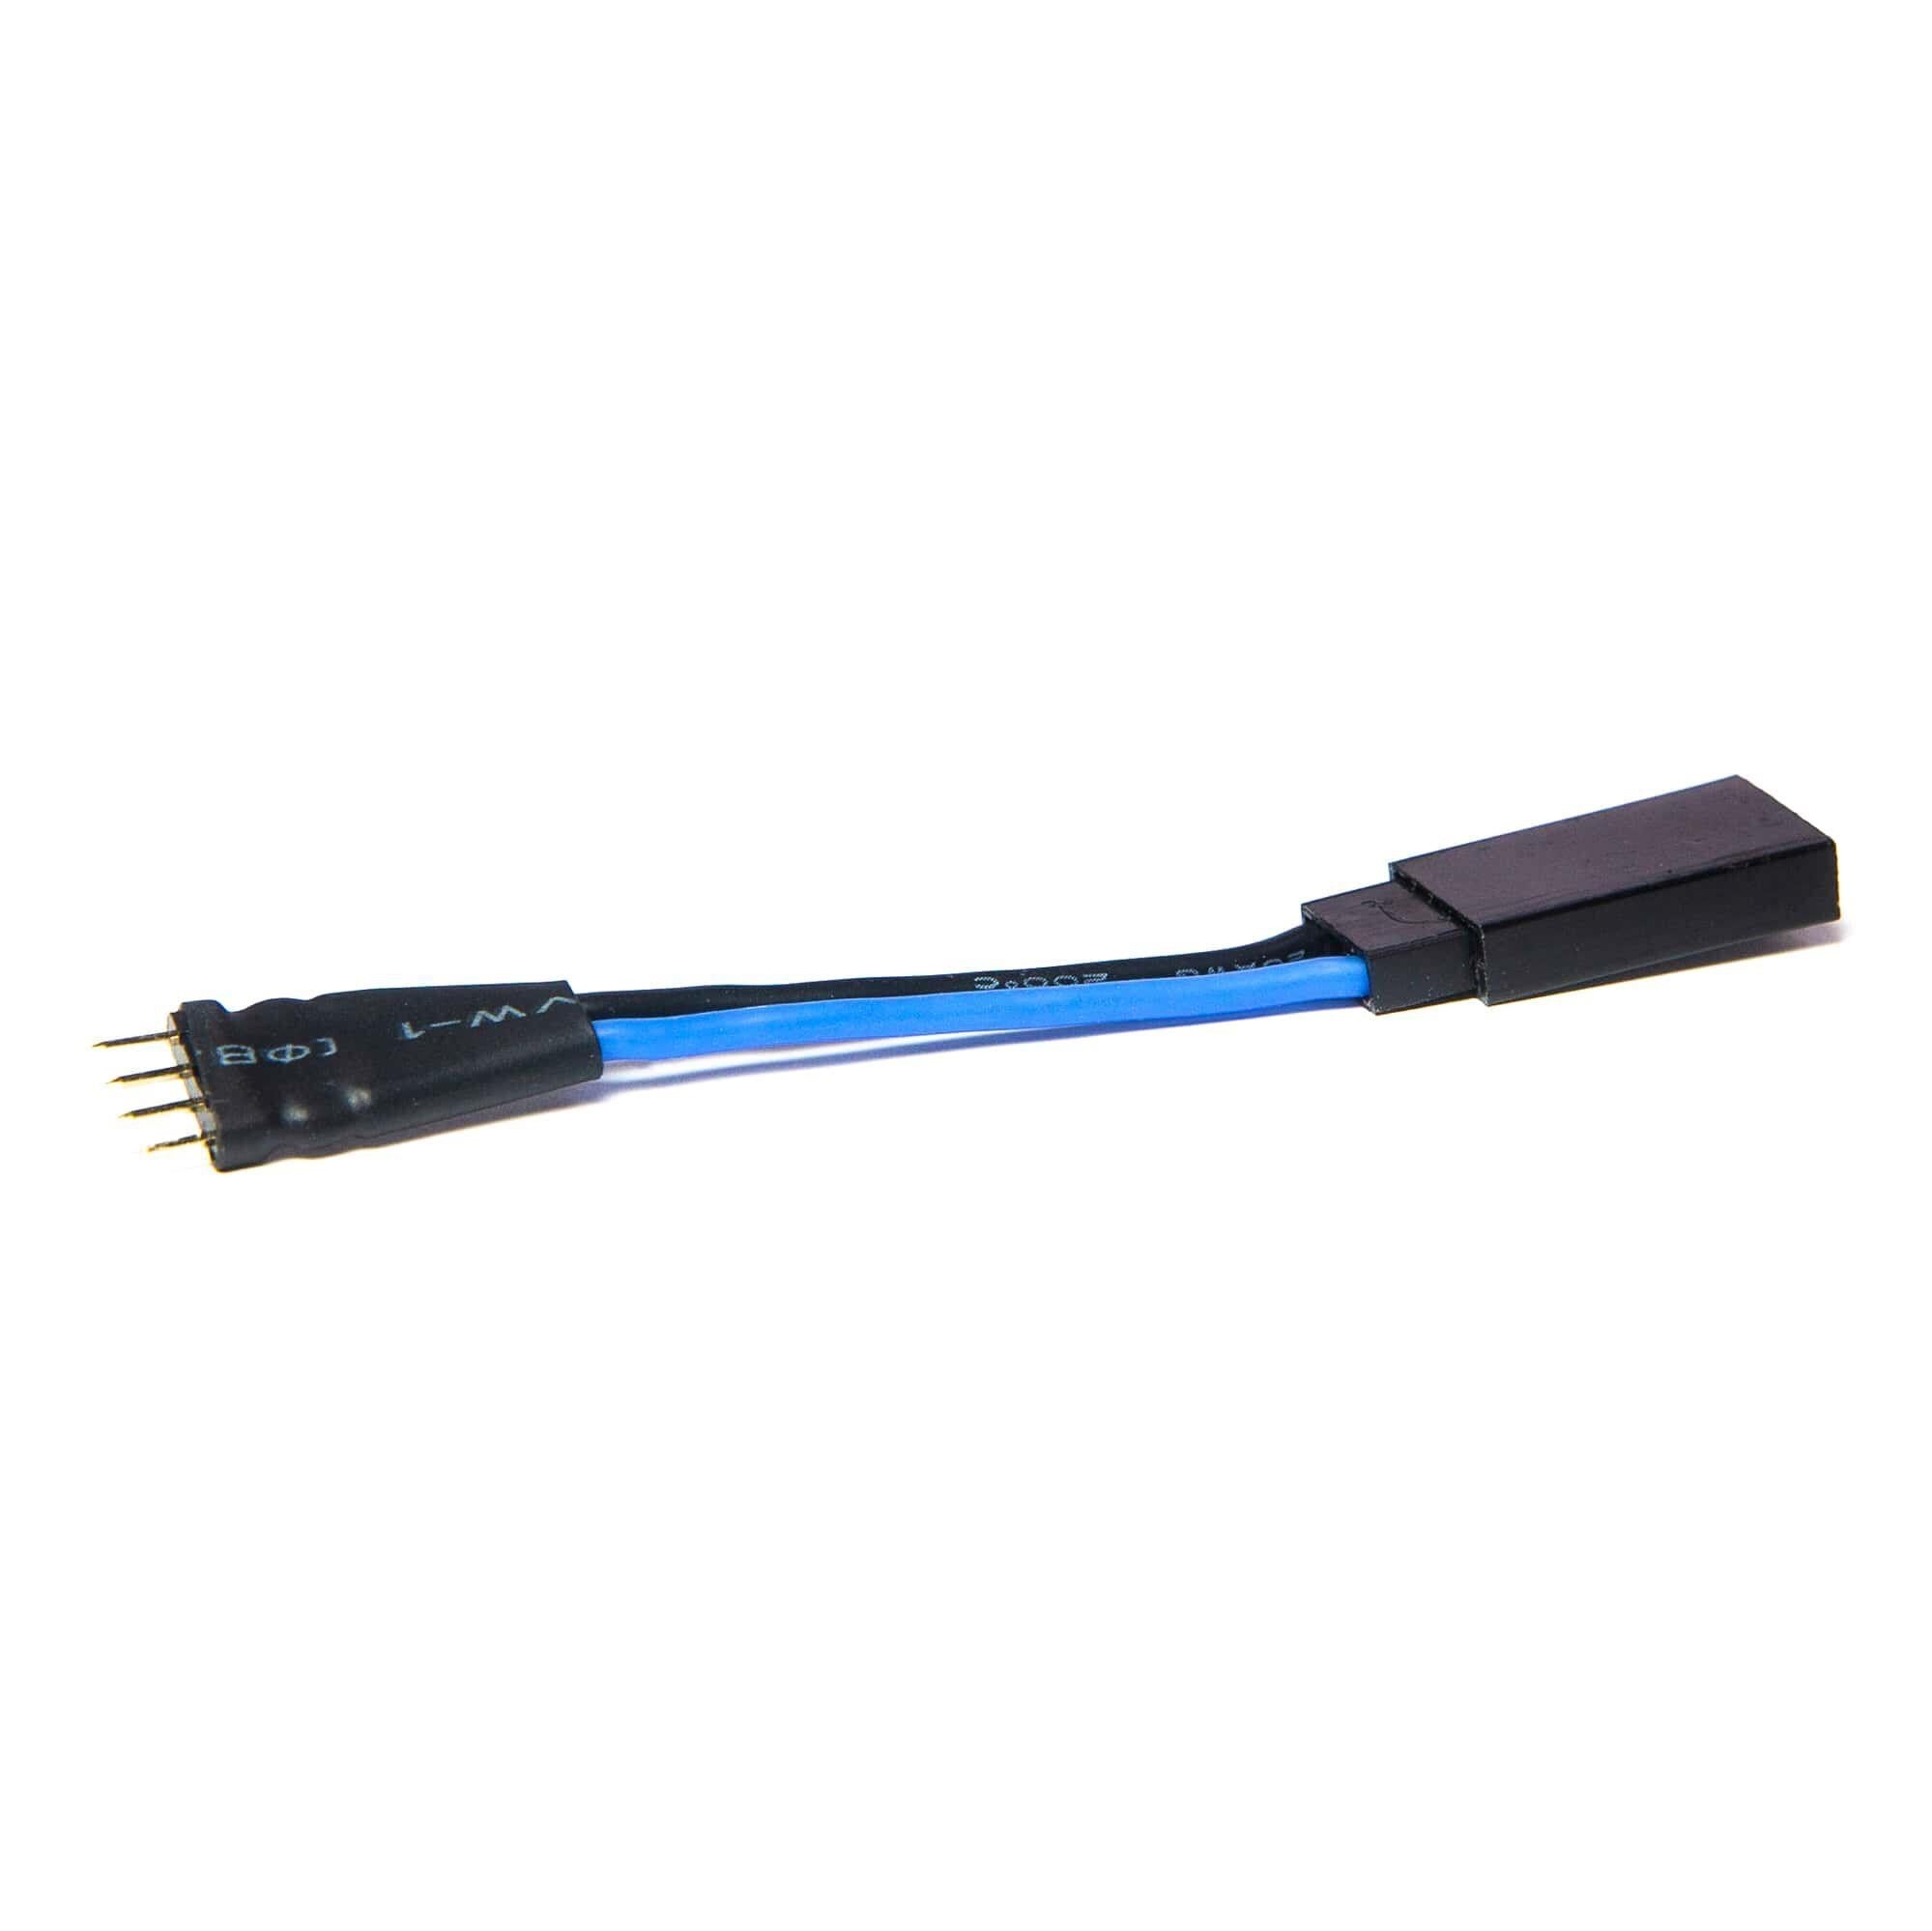 Spektrum USB Serial Adapter, DXS, DX3 SPMA3068